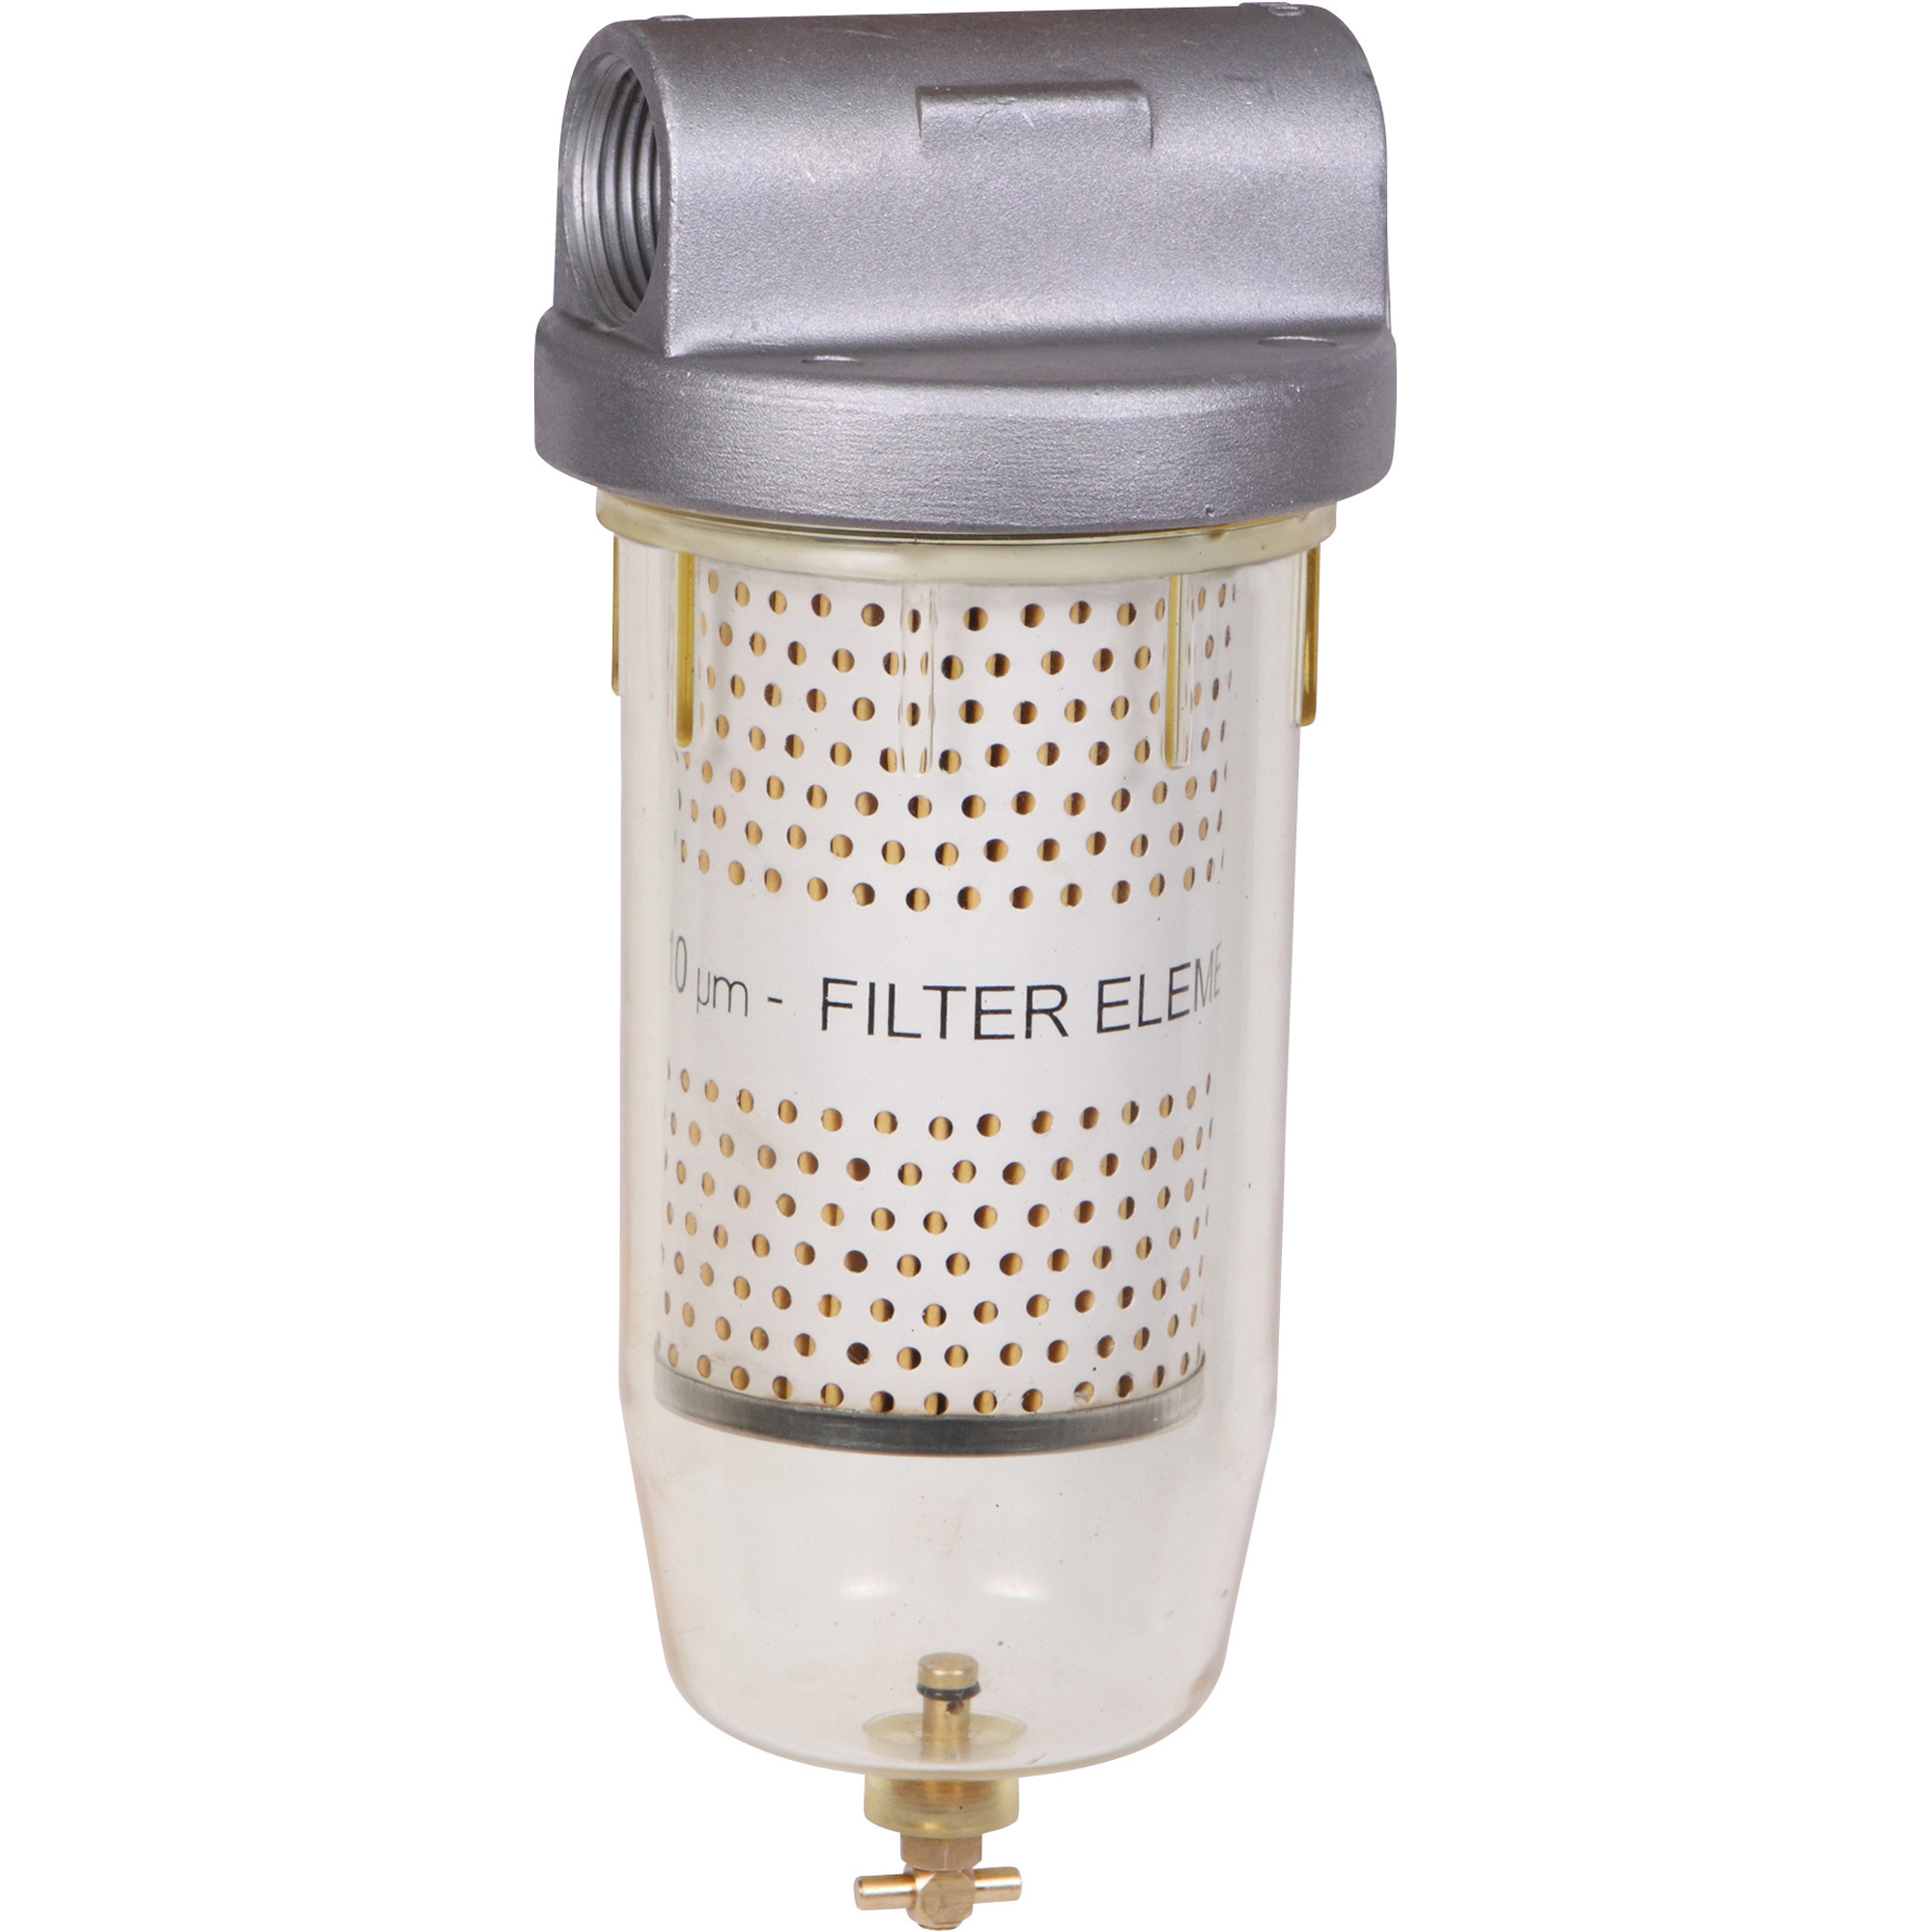 GROZ Fuel Filter, 10 Micron, 5 GPM, 3/4Inch NPT (F), Model FFL/01/3-4WB/N